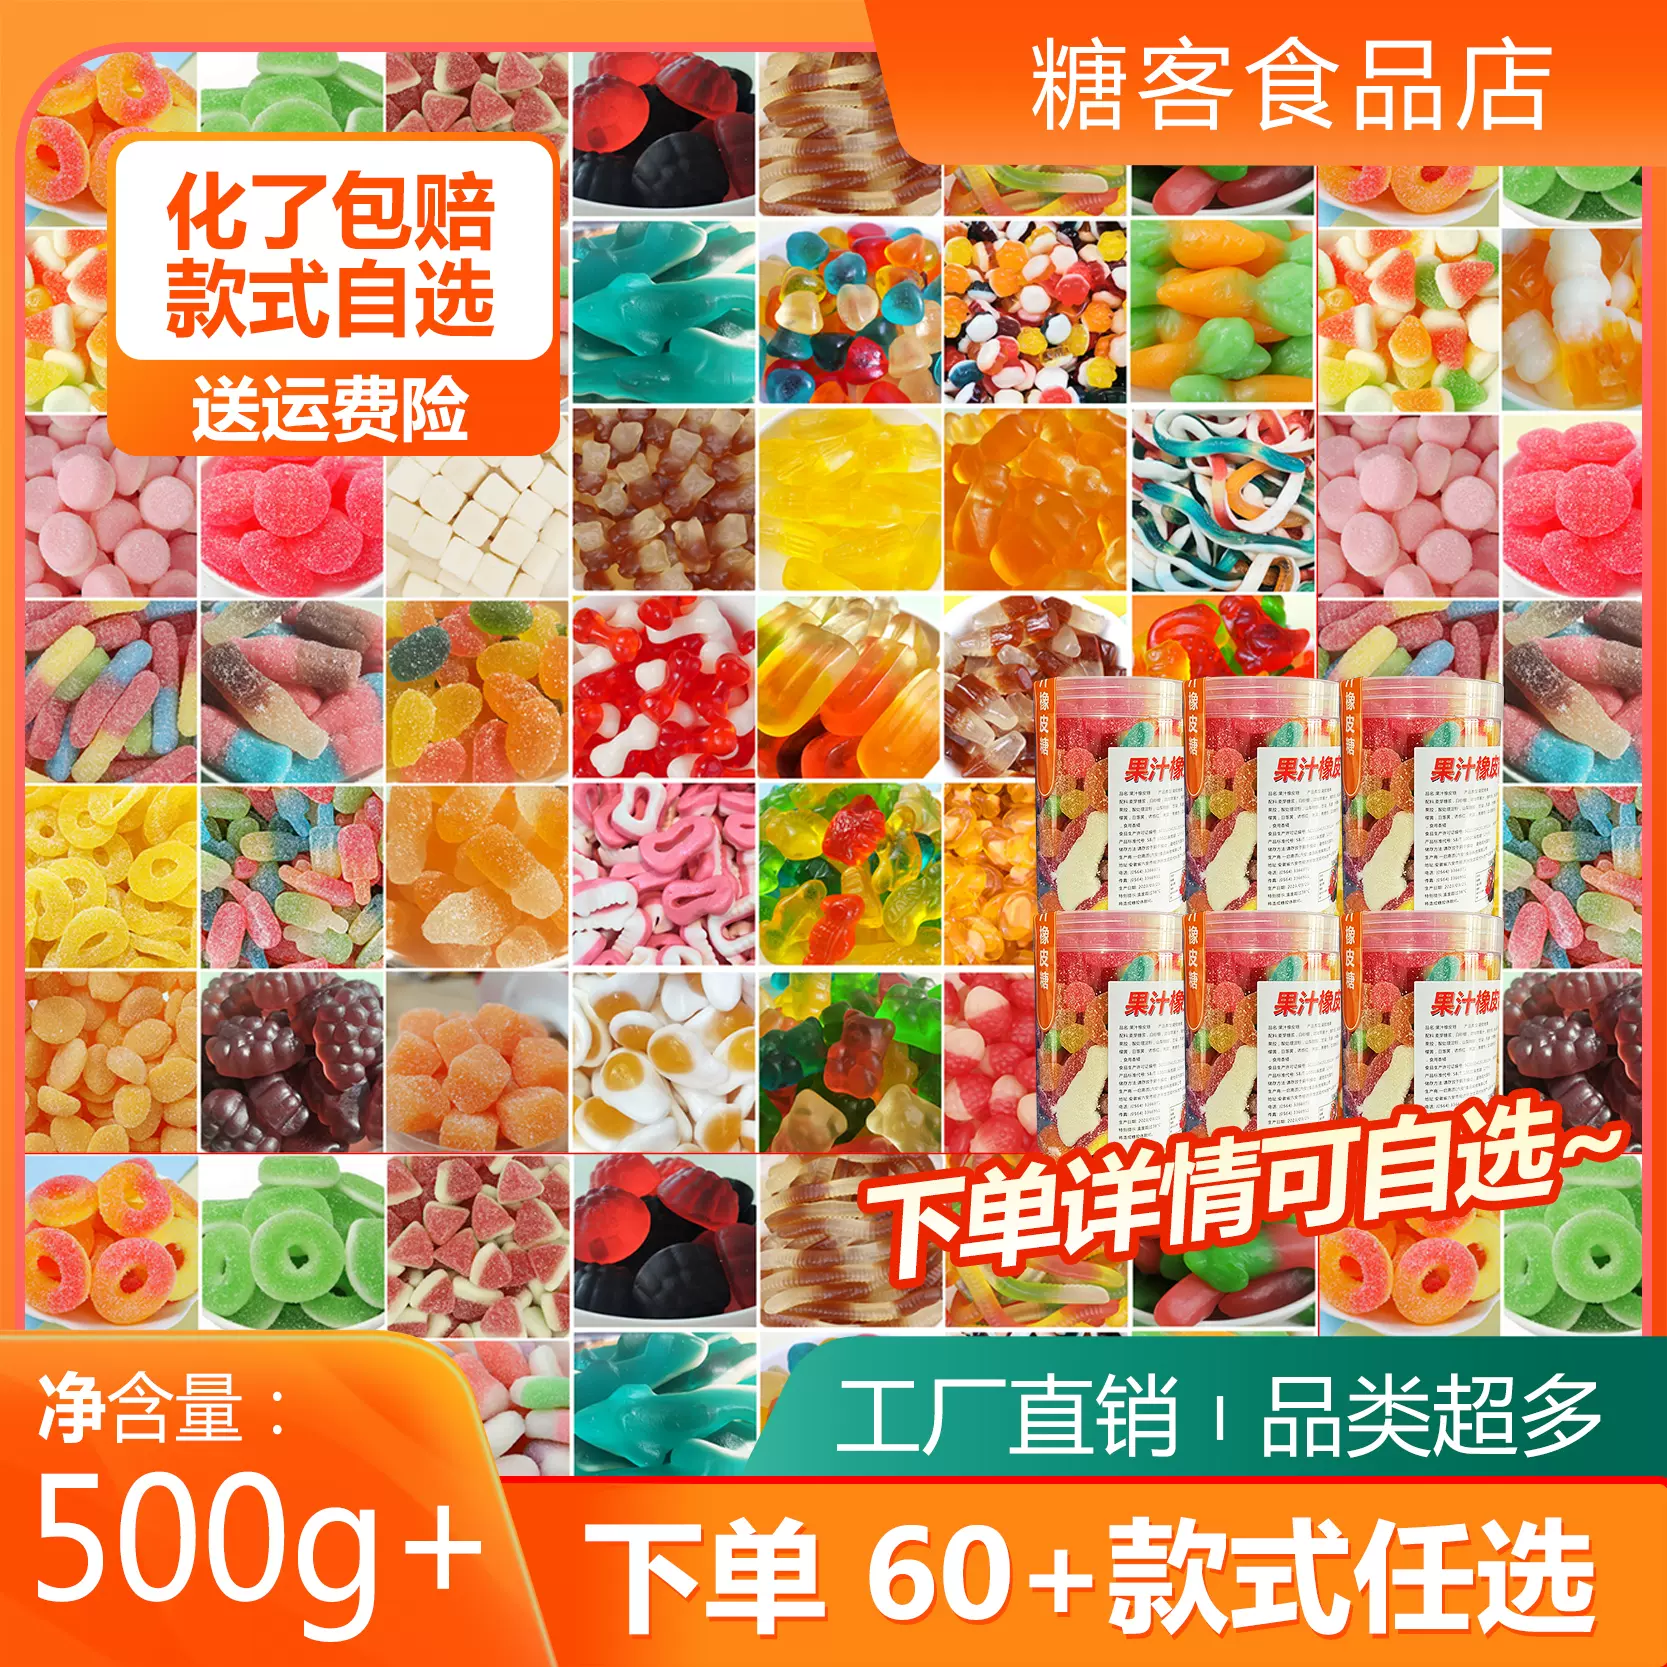 阿斯塔特德国酸沙橡皮糖QQ糖4D爆浆果汁软糖抖音同款自选罐装食品-Taobao